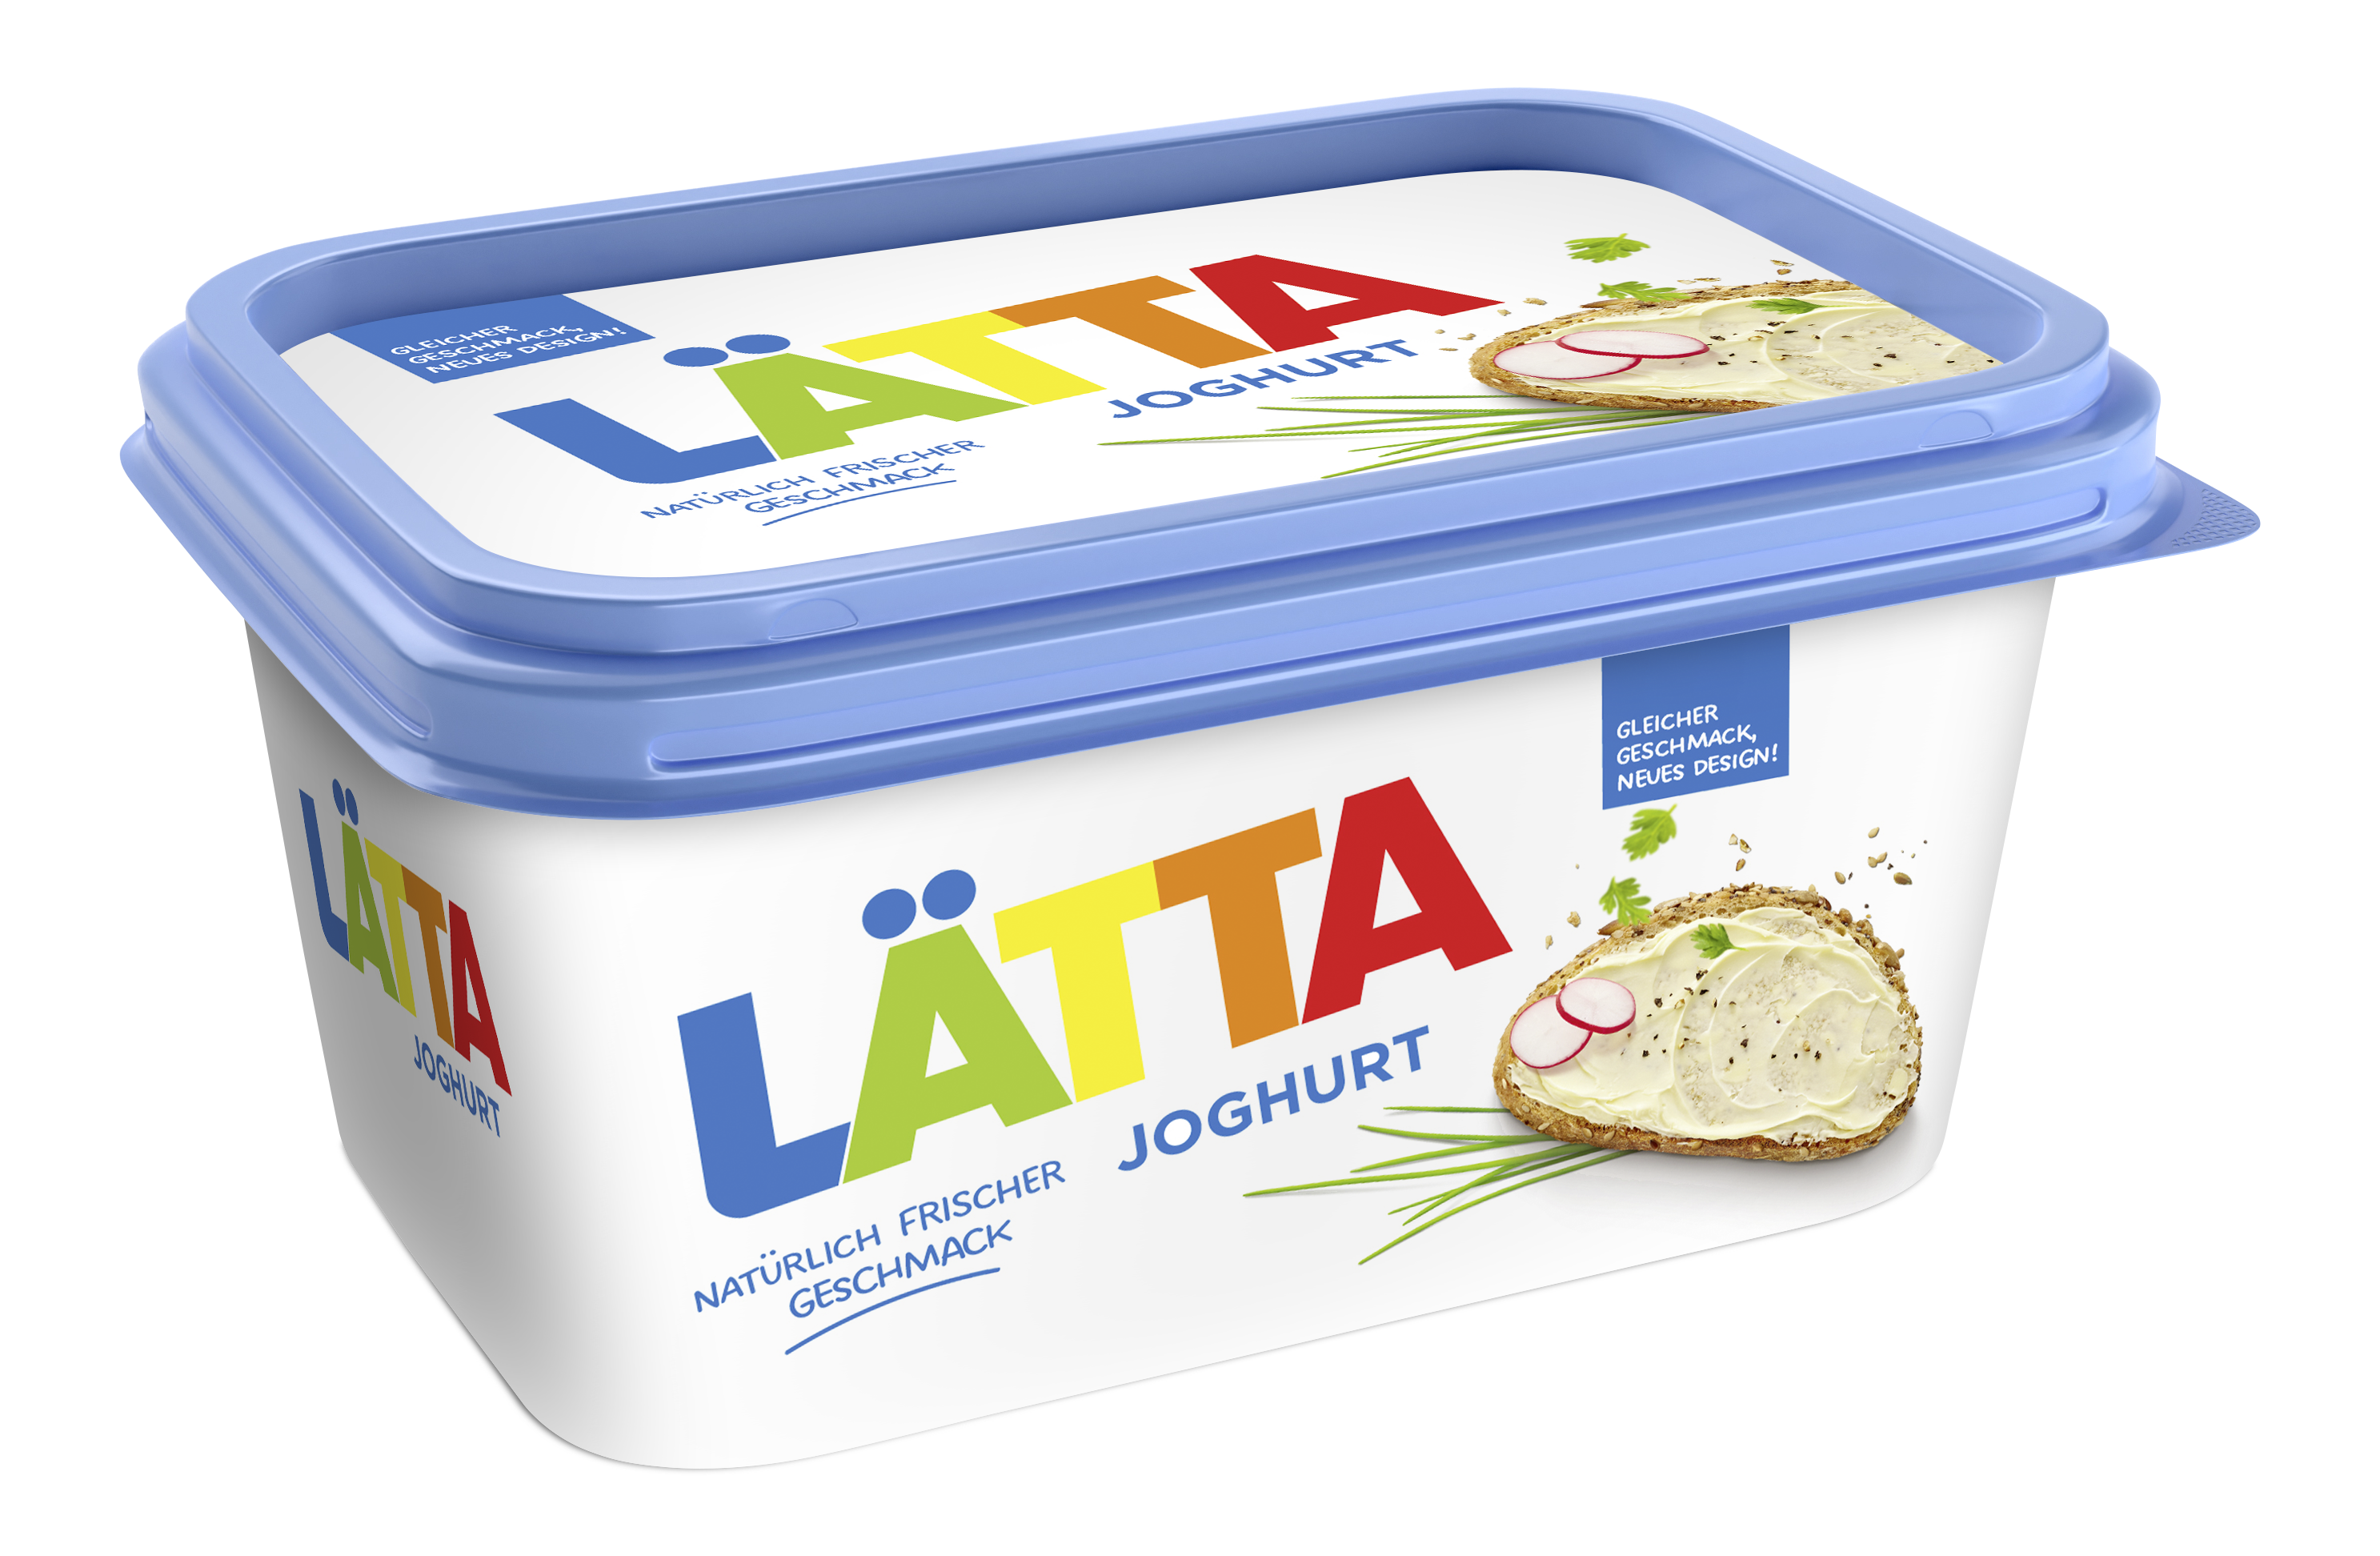 Laetta Joghurt 450g 